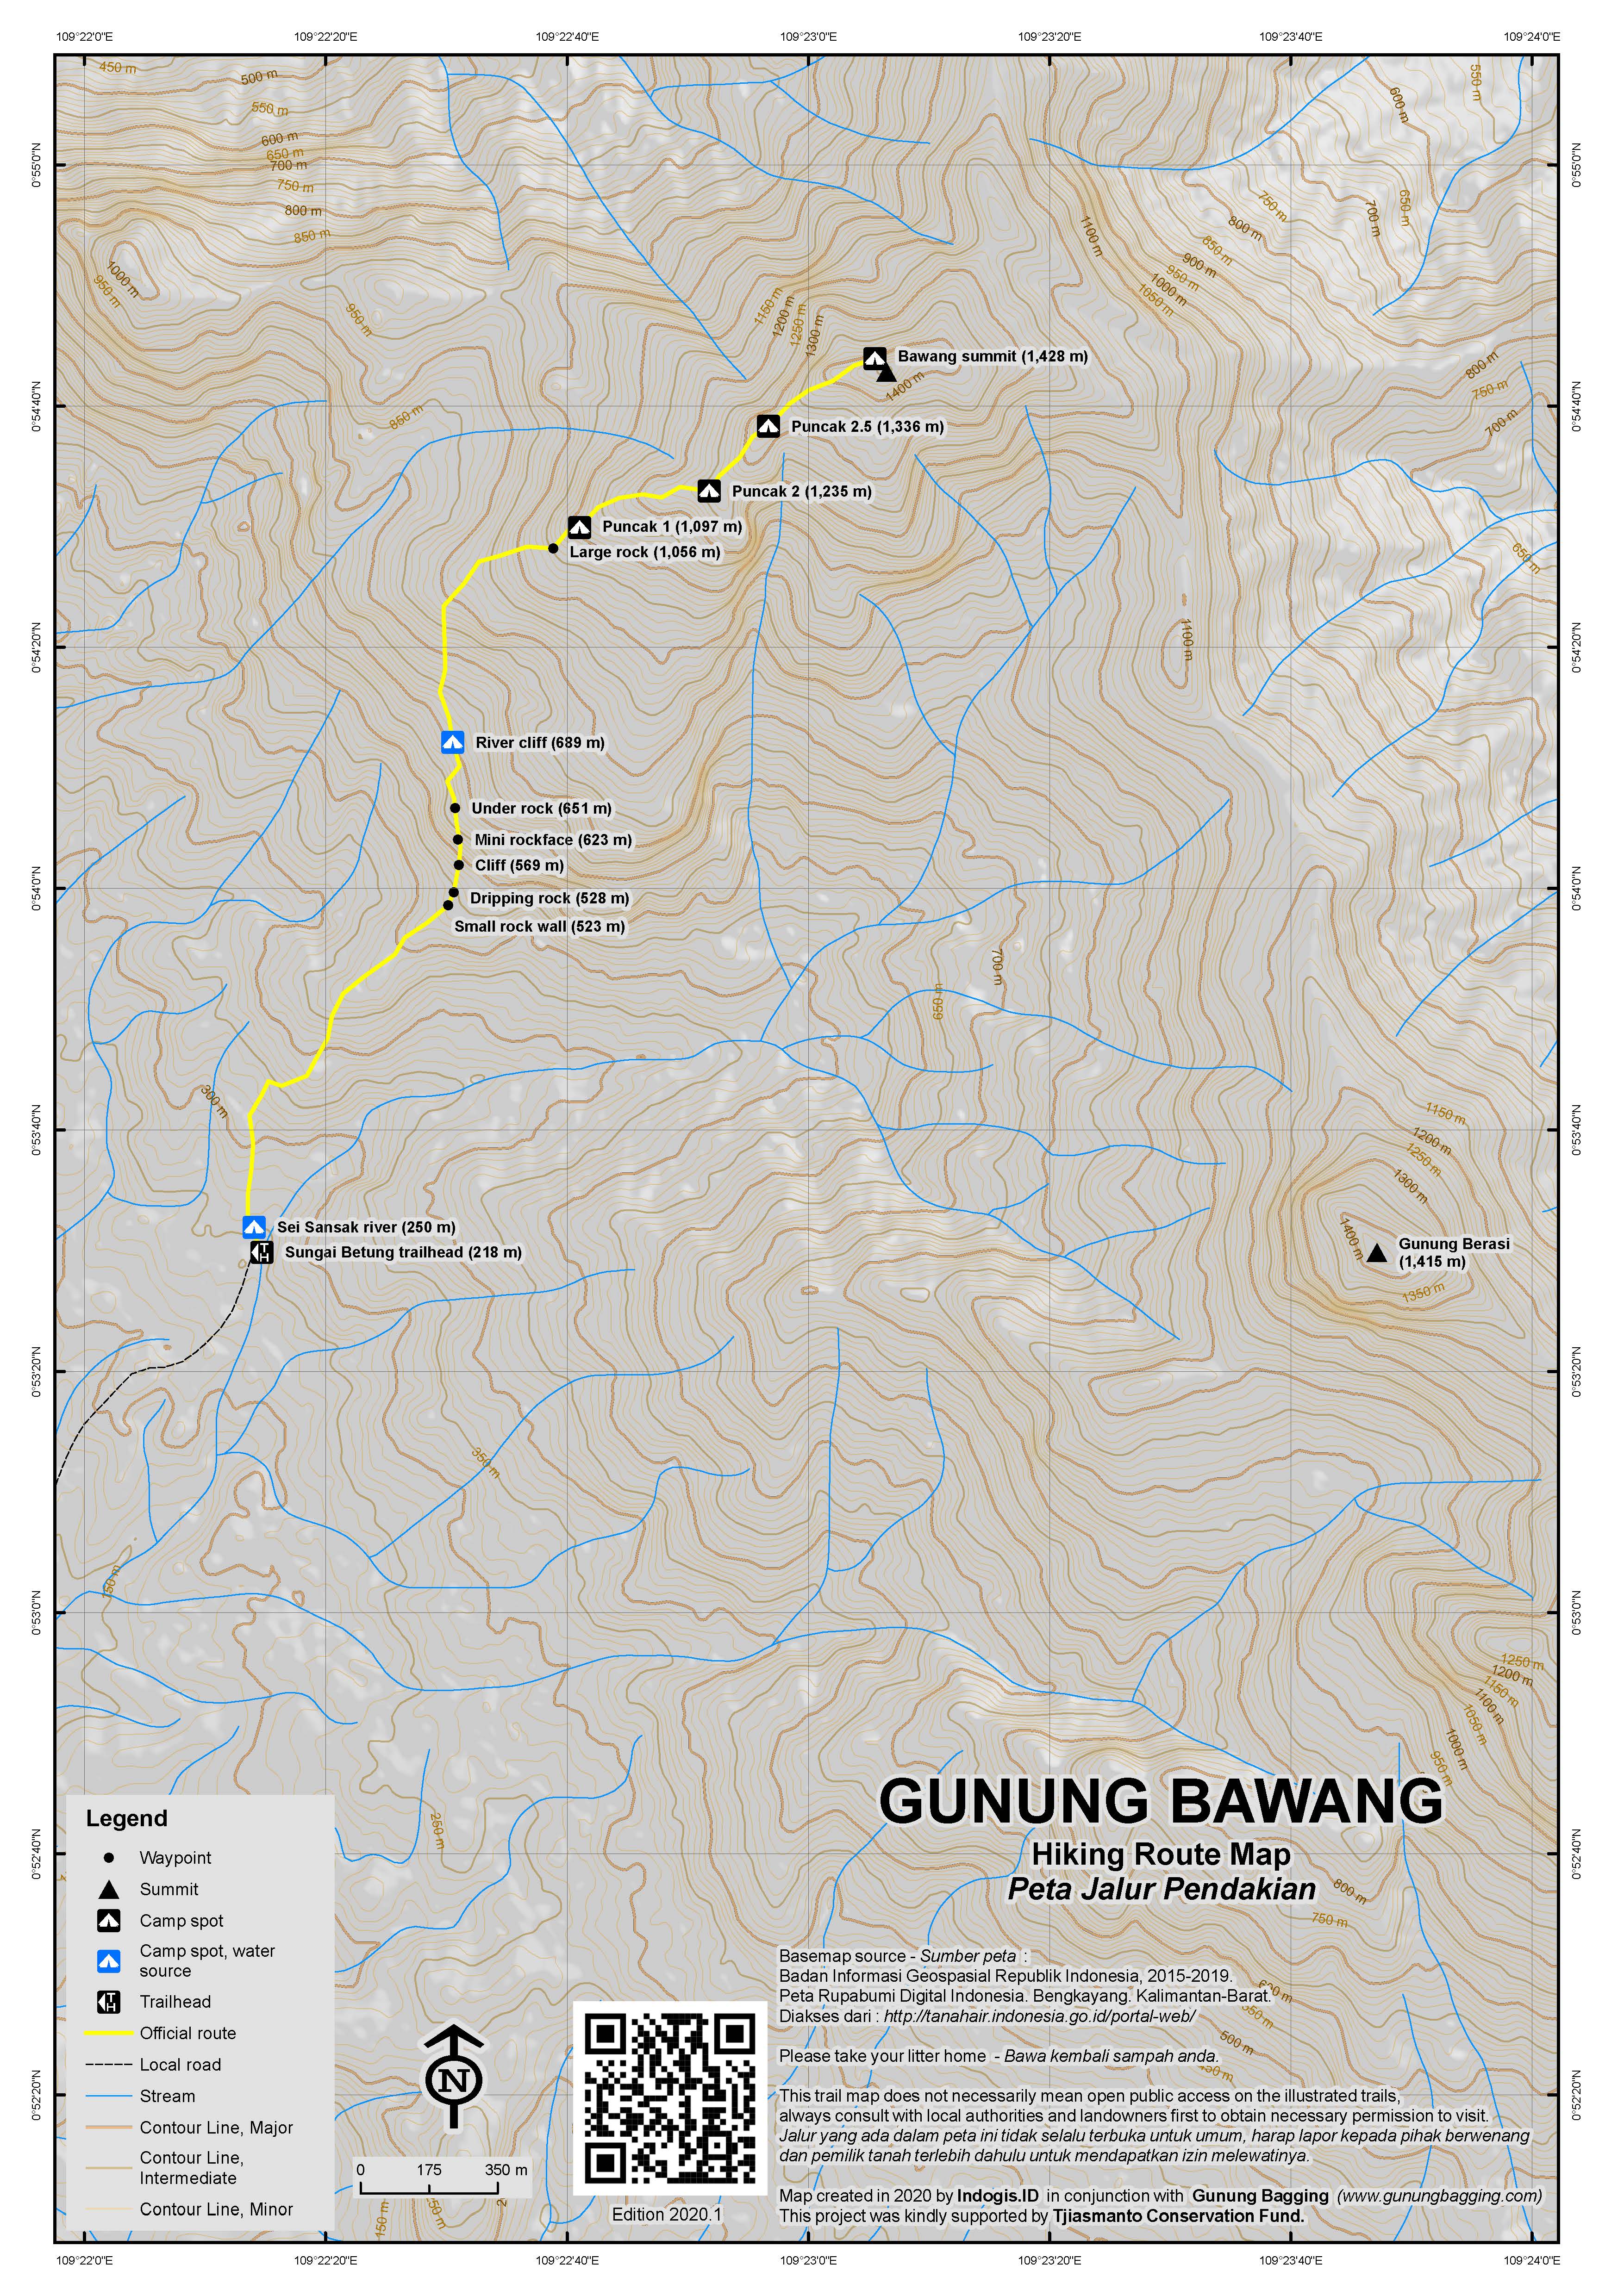 Peta Jalur Pendakian Gunung Bawang